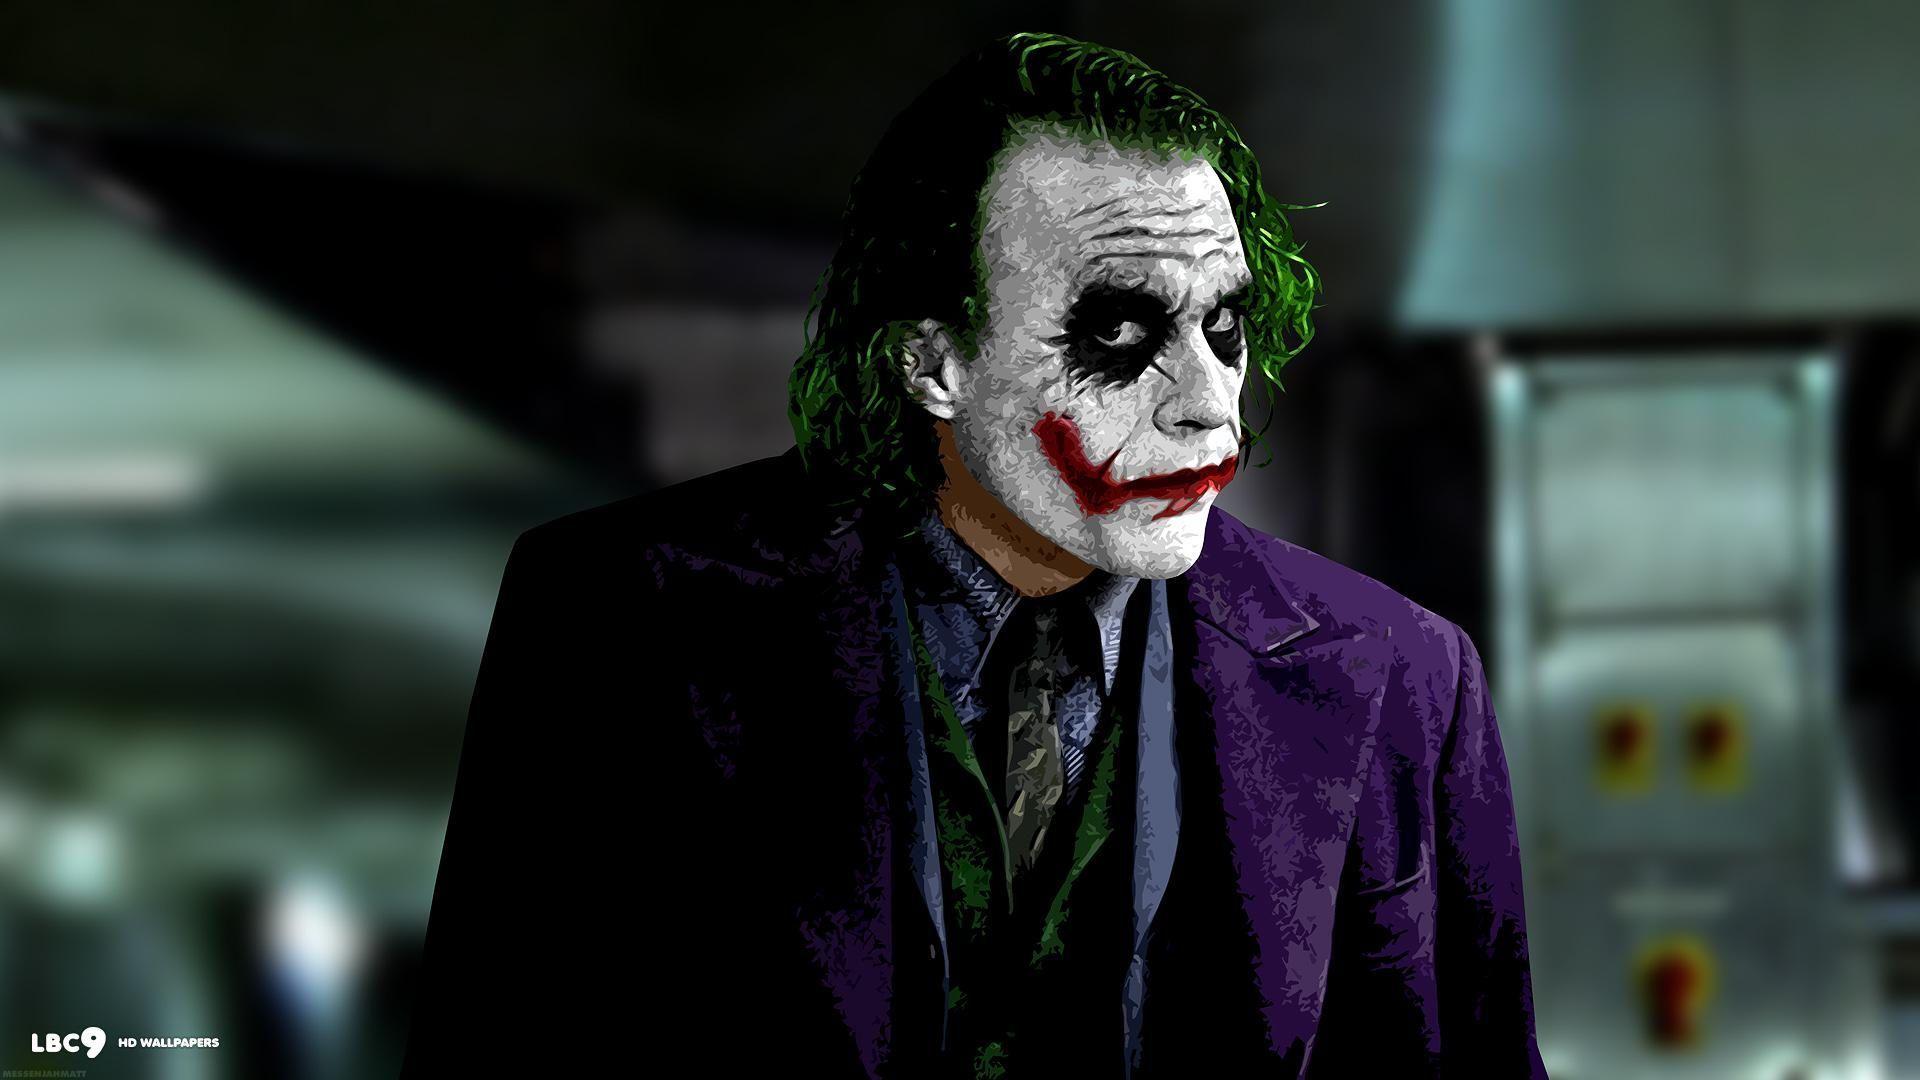 The Joker The Dark Knight wallpaper HD Wallpaper Desk×1080